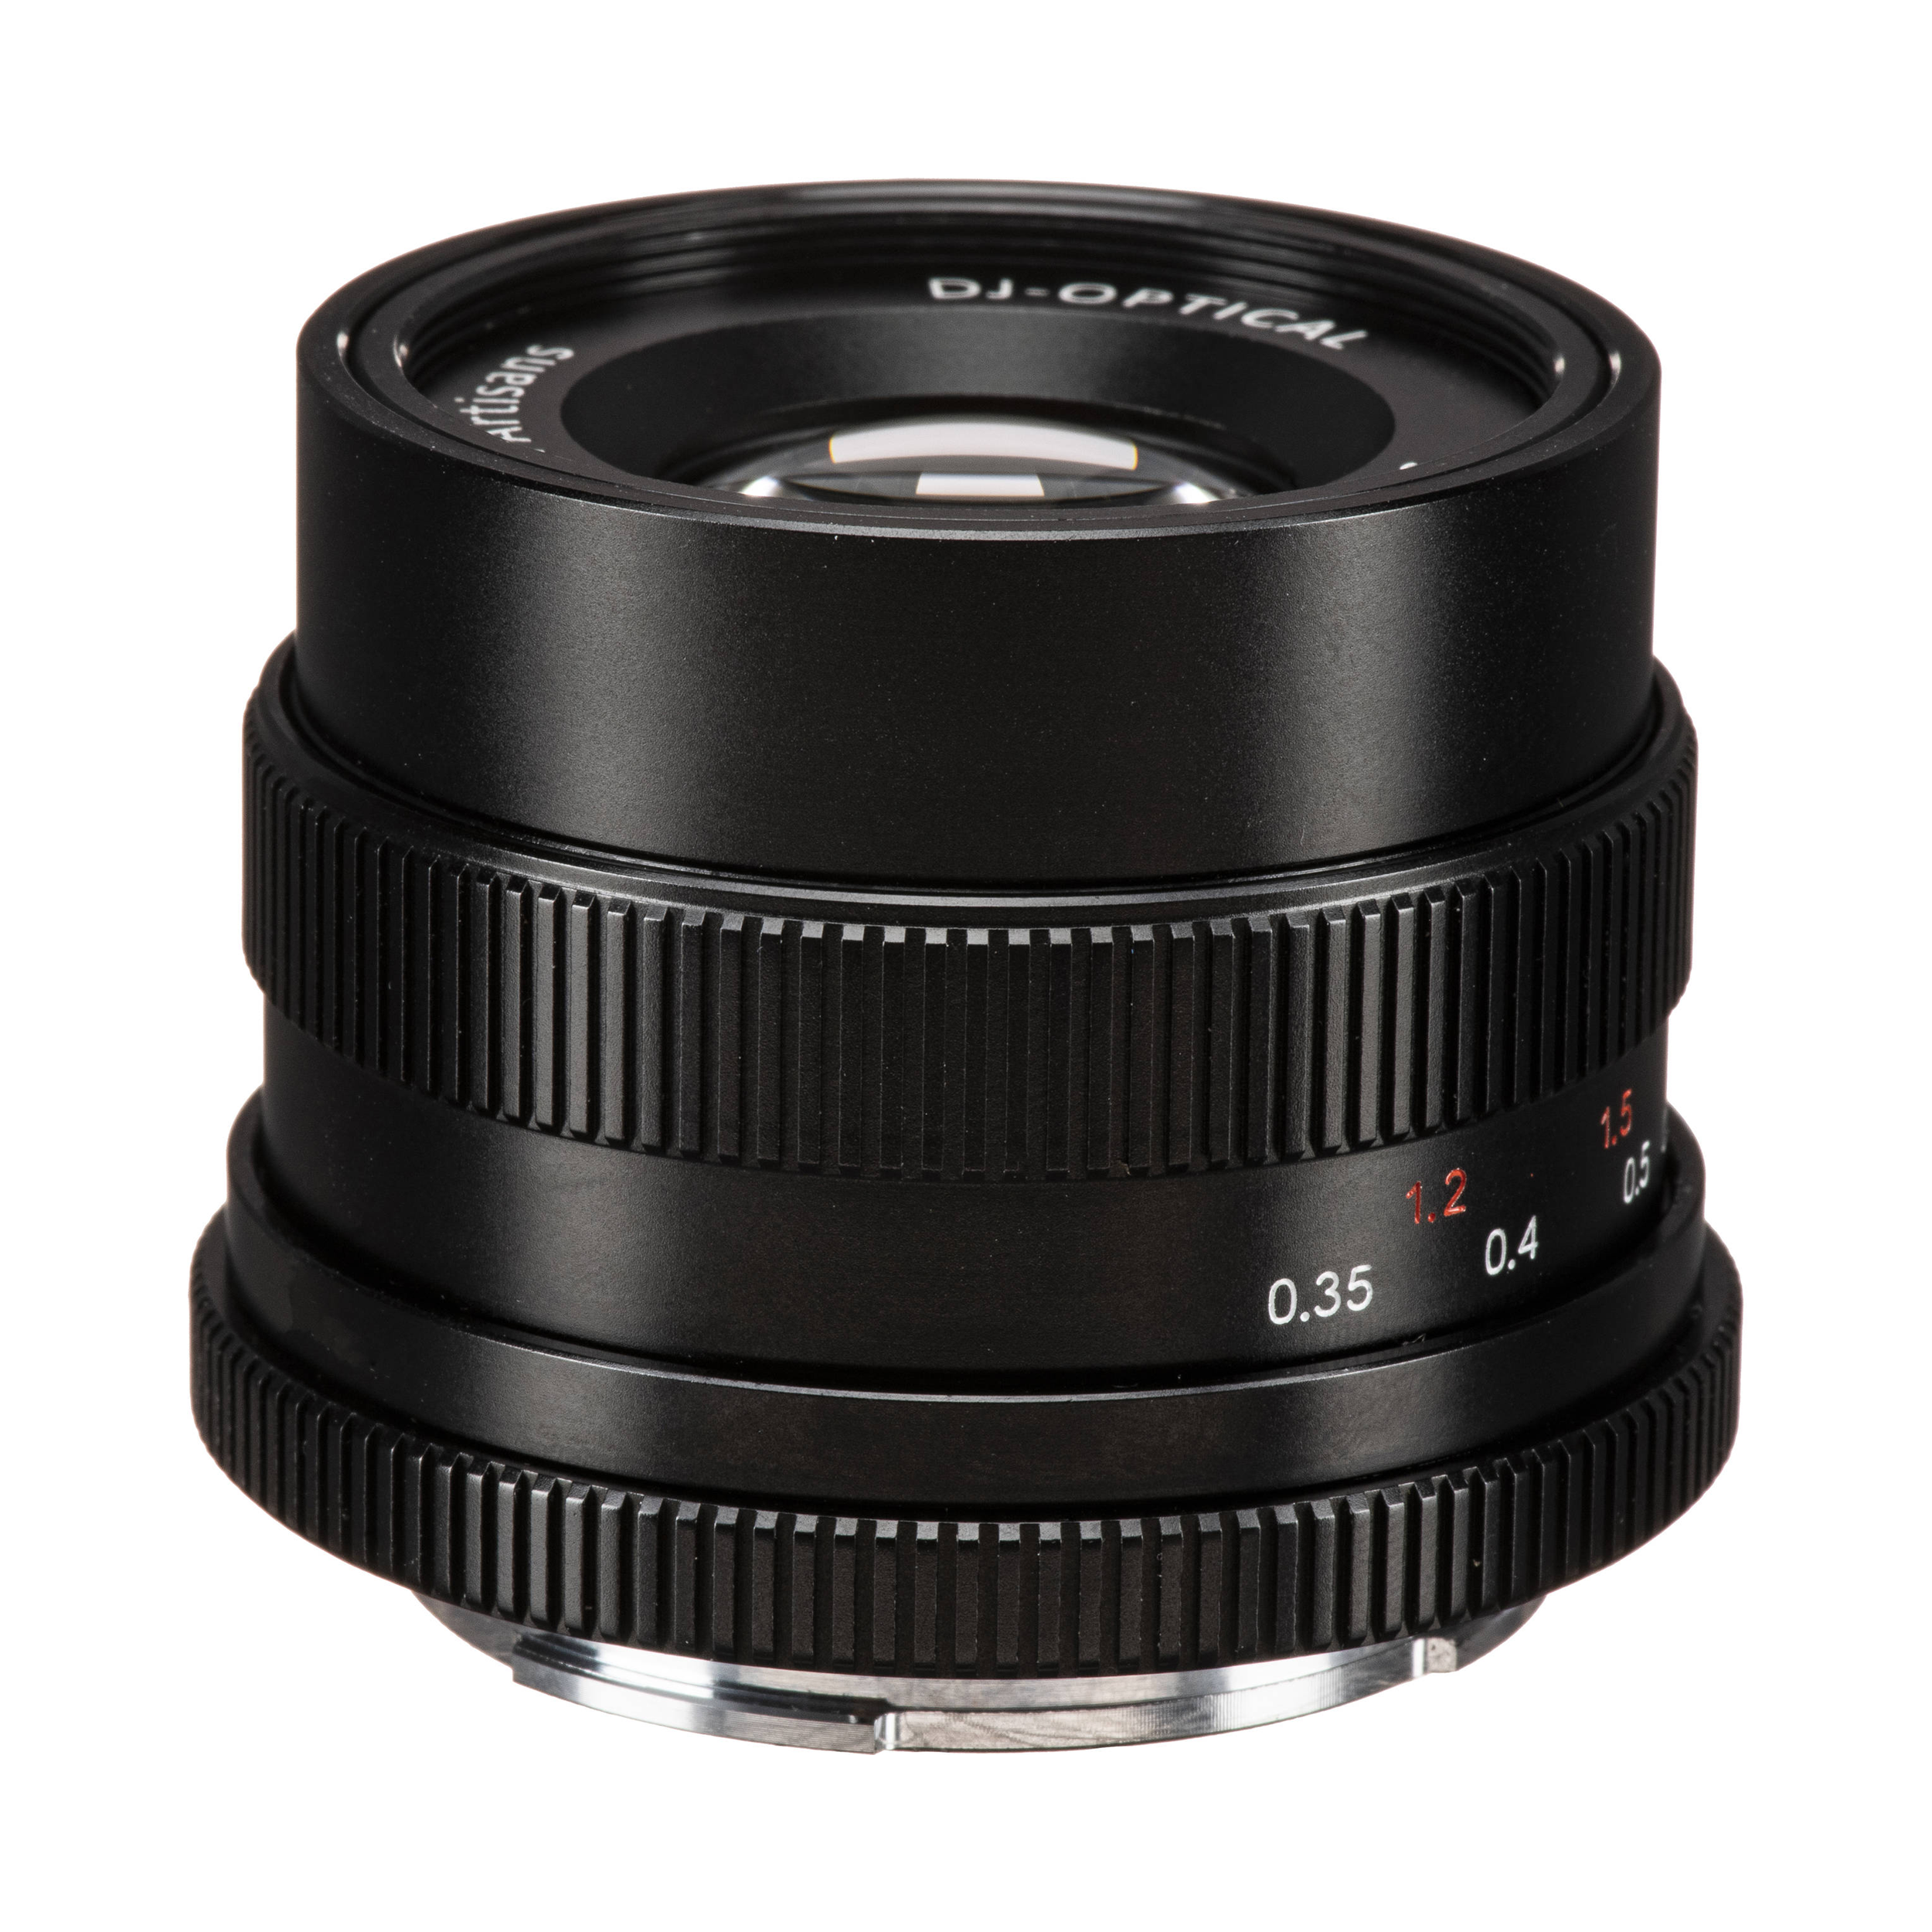 7artisans Photoelectric 35mm f/2 Lens for Sony E Mount